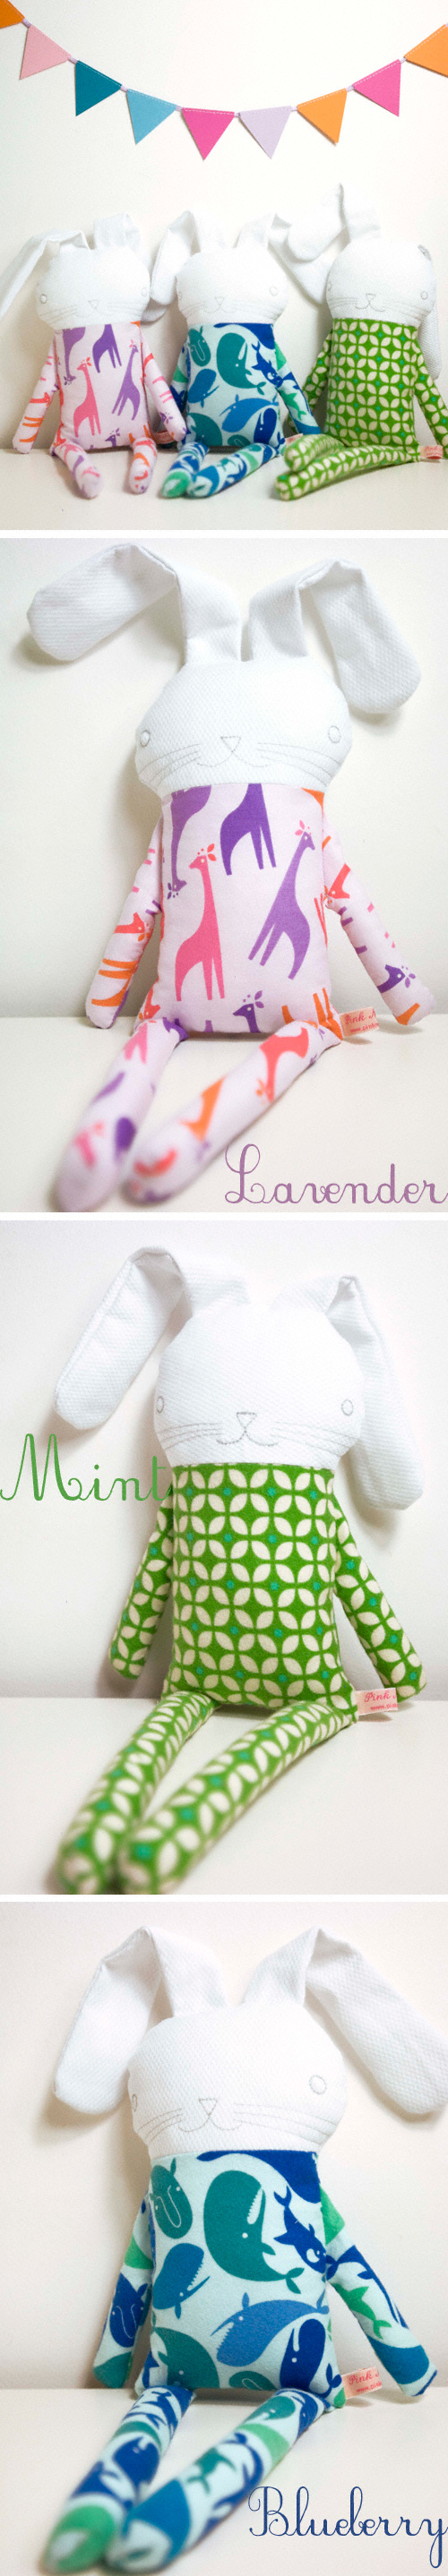 doudou soft toy rabbit in pyjama by PinkNounou